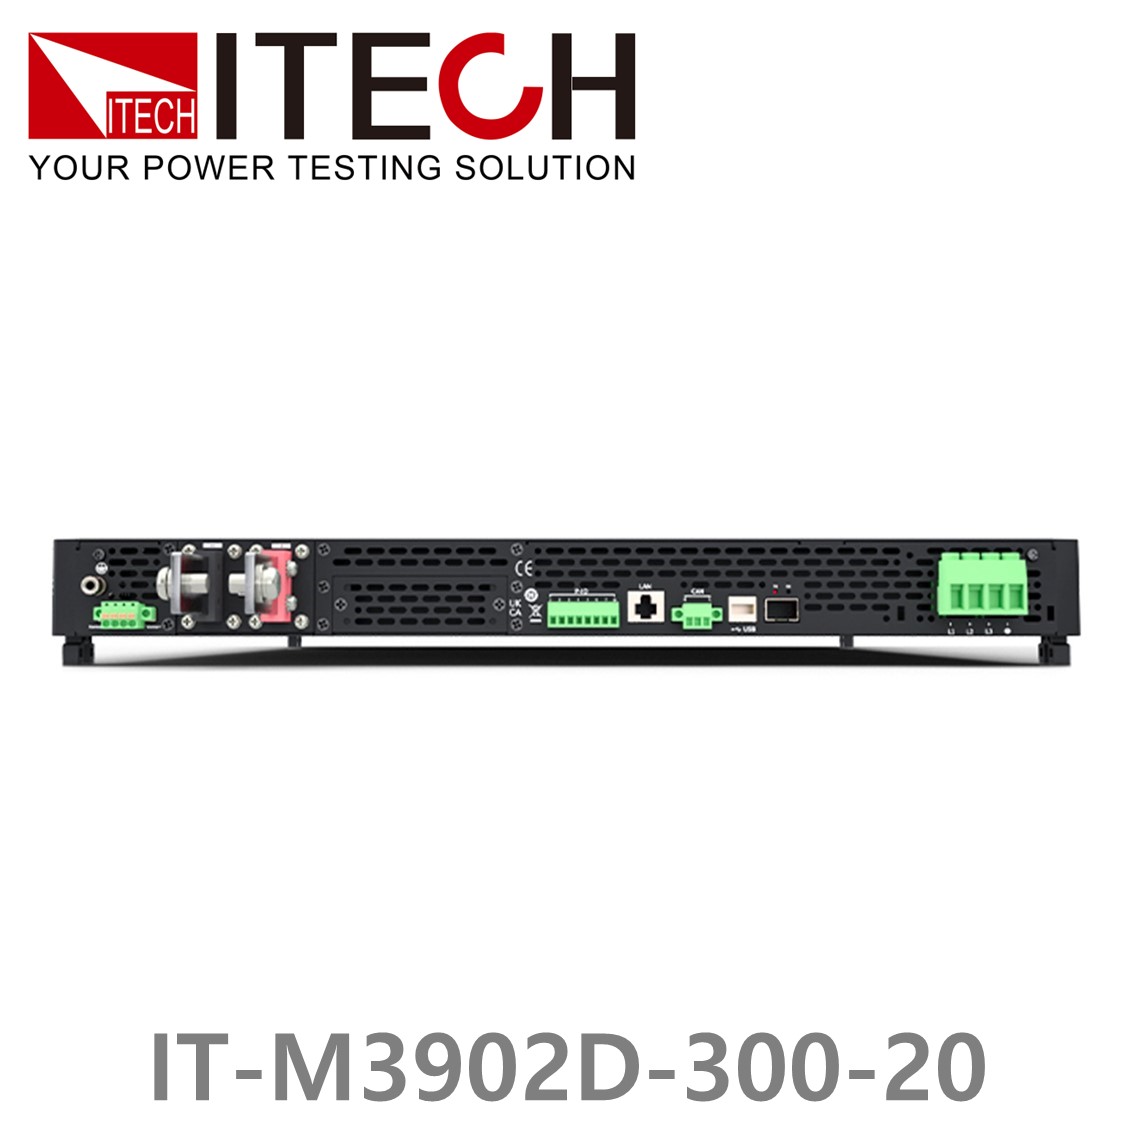 [ ITECH ] IT-M3902D-300-20 양방향 프로그래머블 DC전원공급기, DC파워서플라이